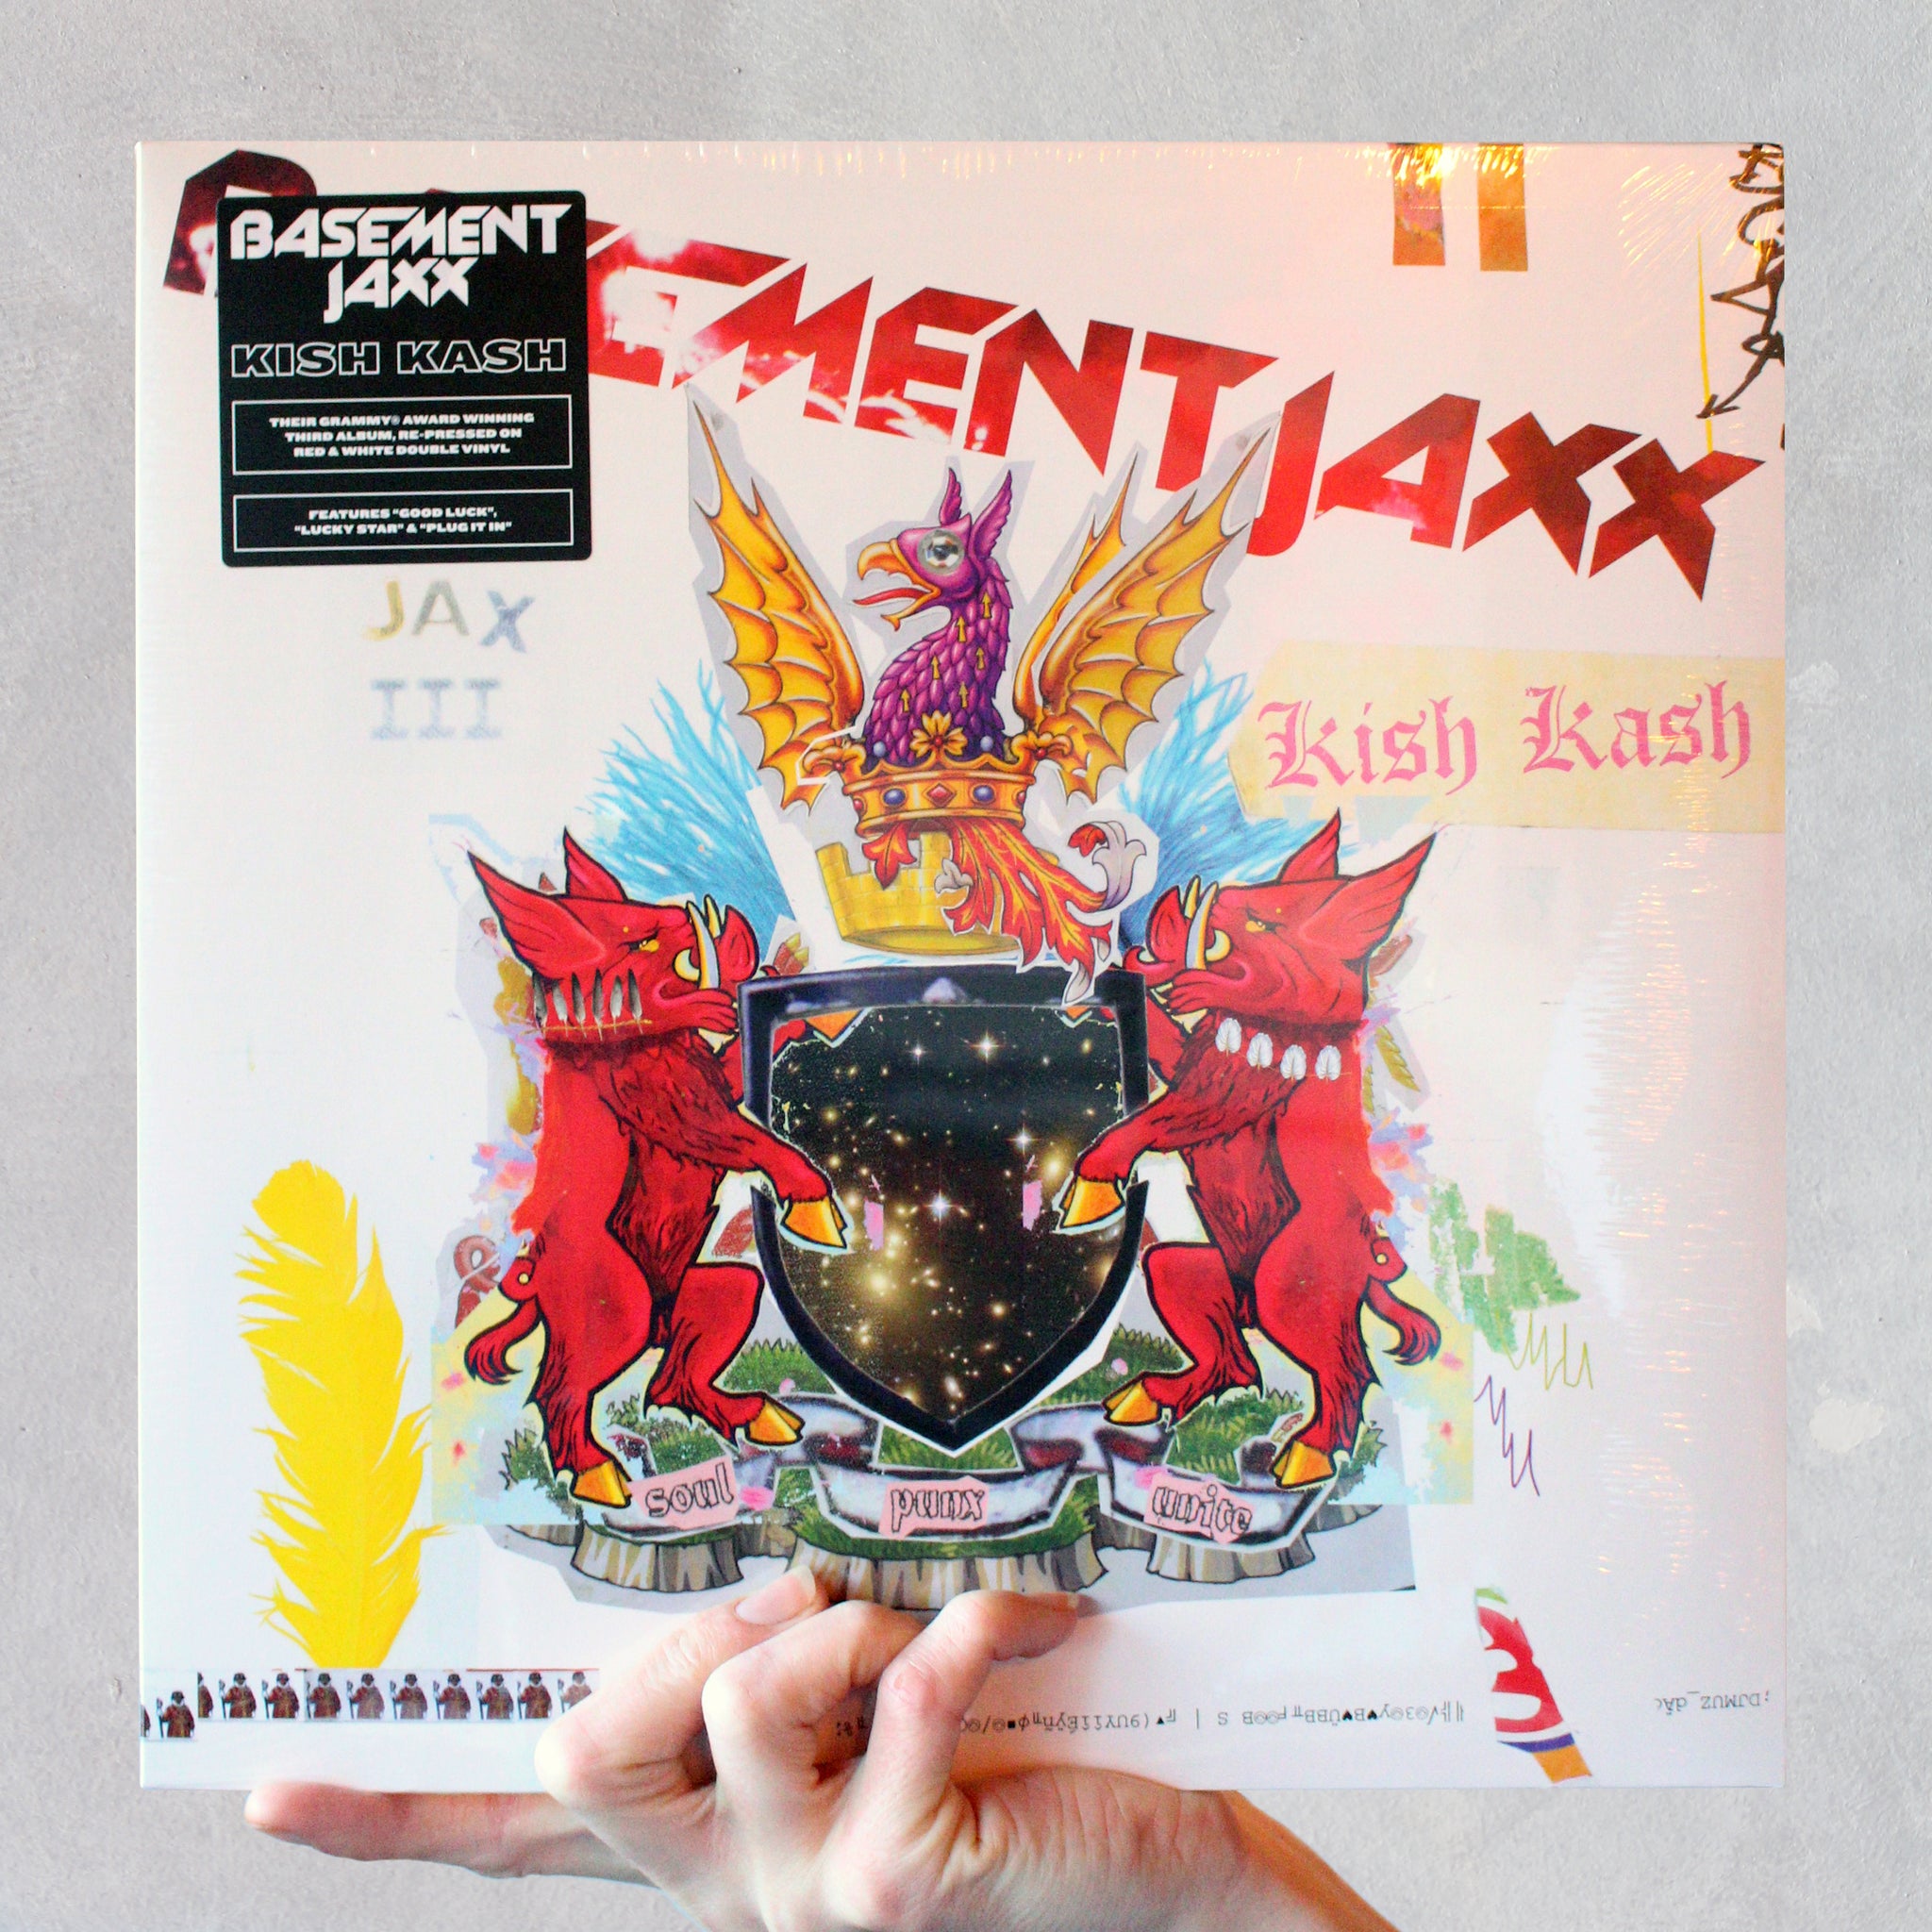 Basement Jaxx - 'Kish Kash' (2003) Exclusive Red & White Double LP - Audio Architect Apparel